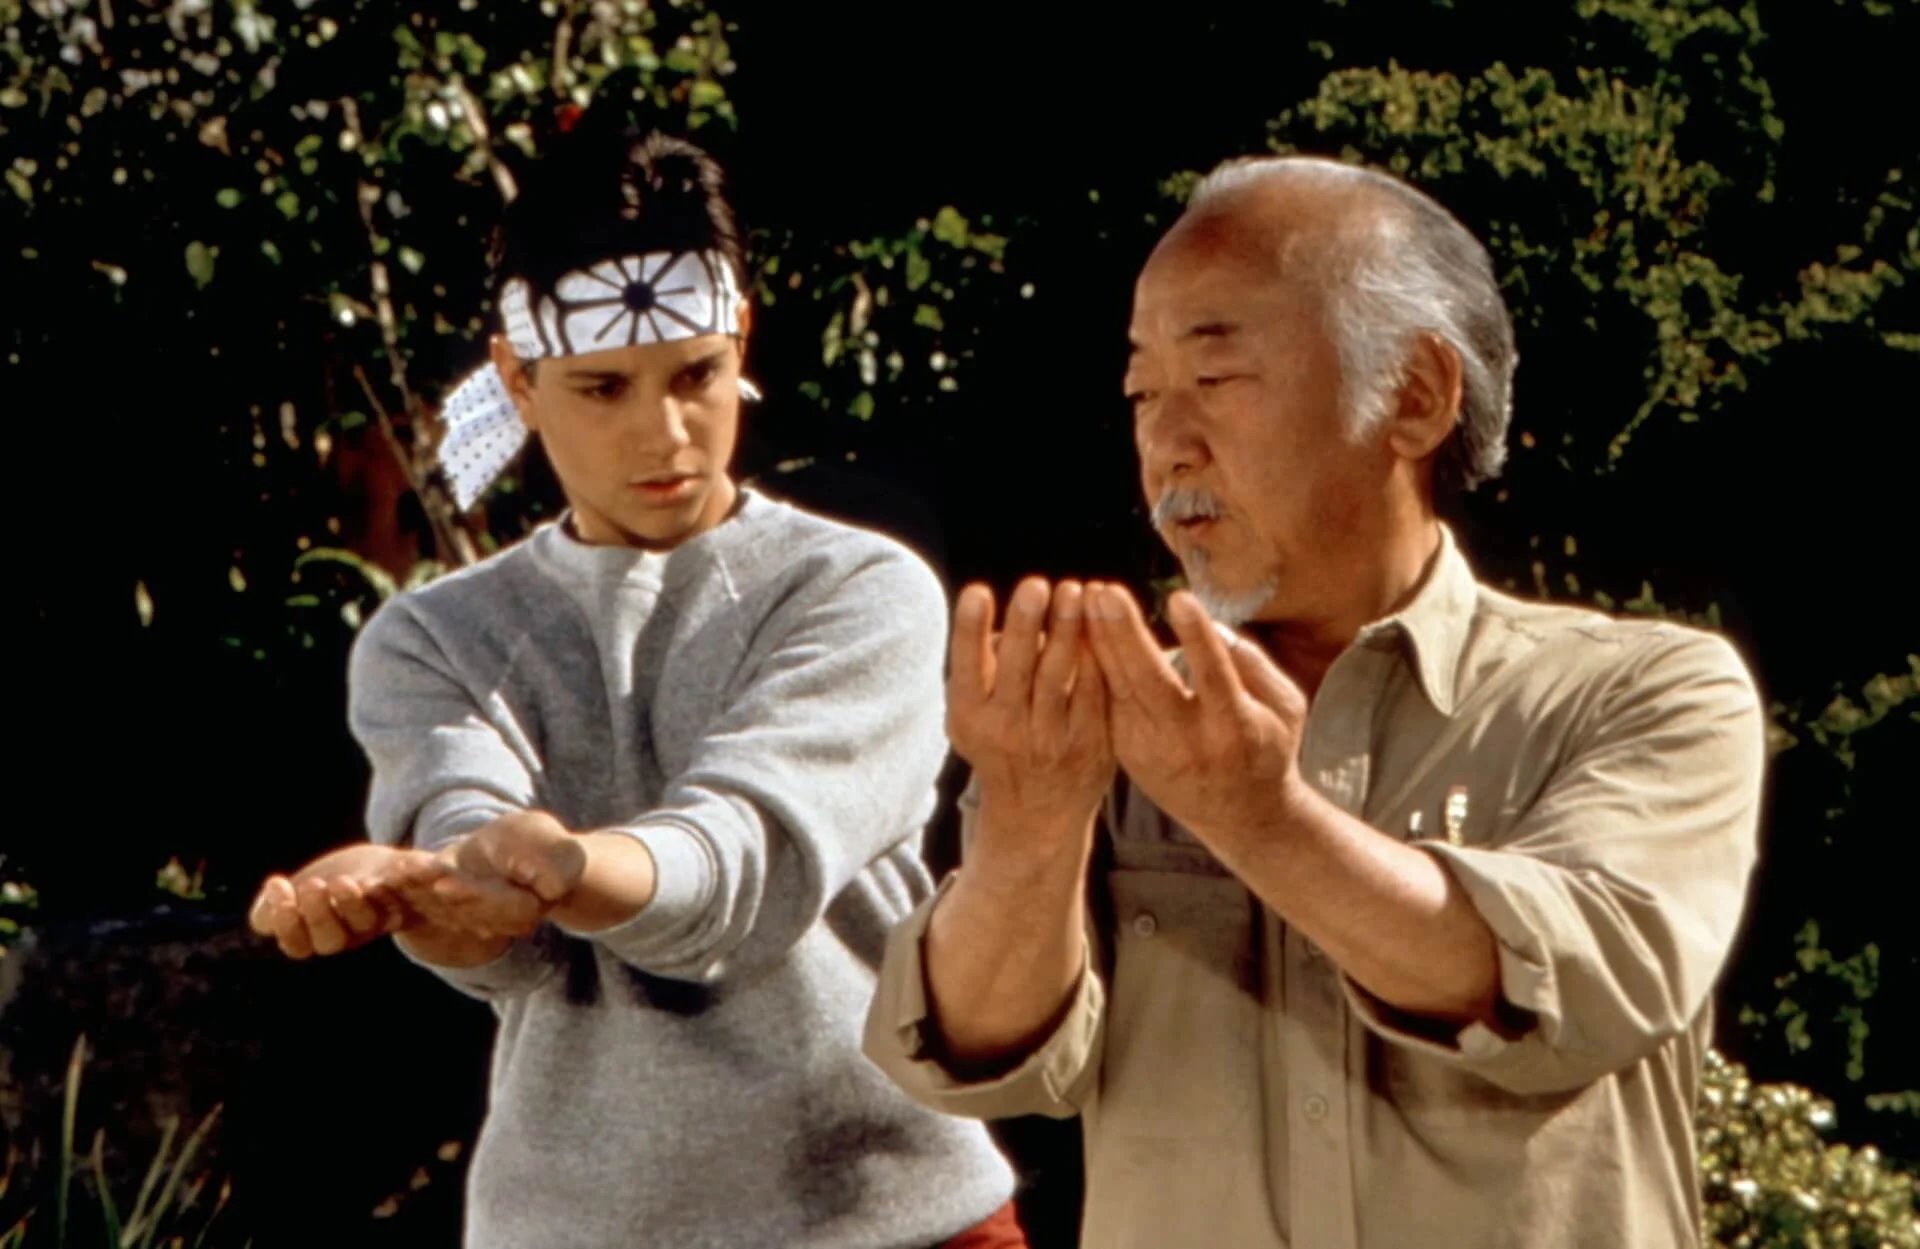 A Sony Pictures bejelentette a Karate kölyök új filmjét